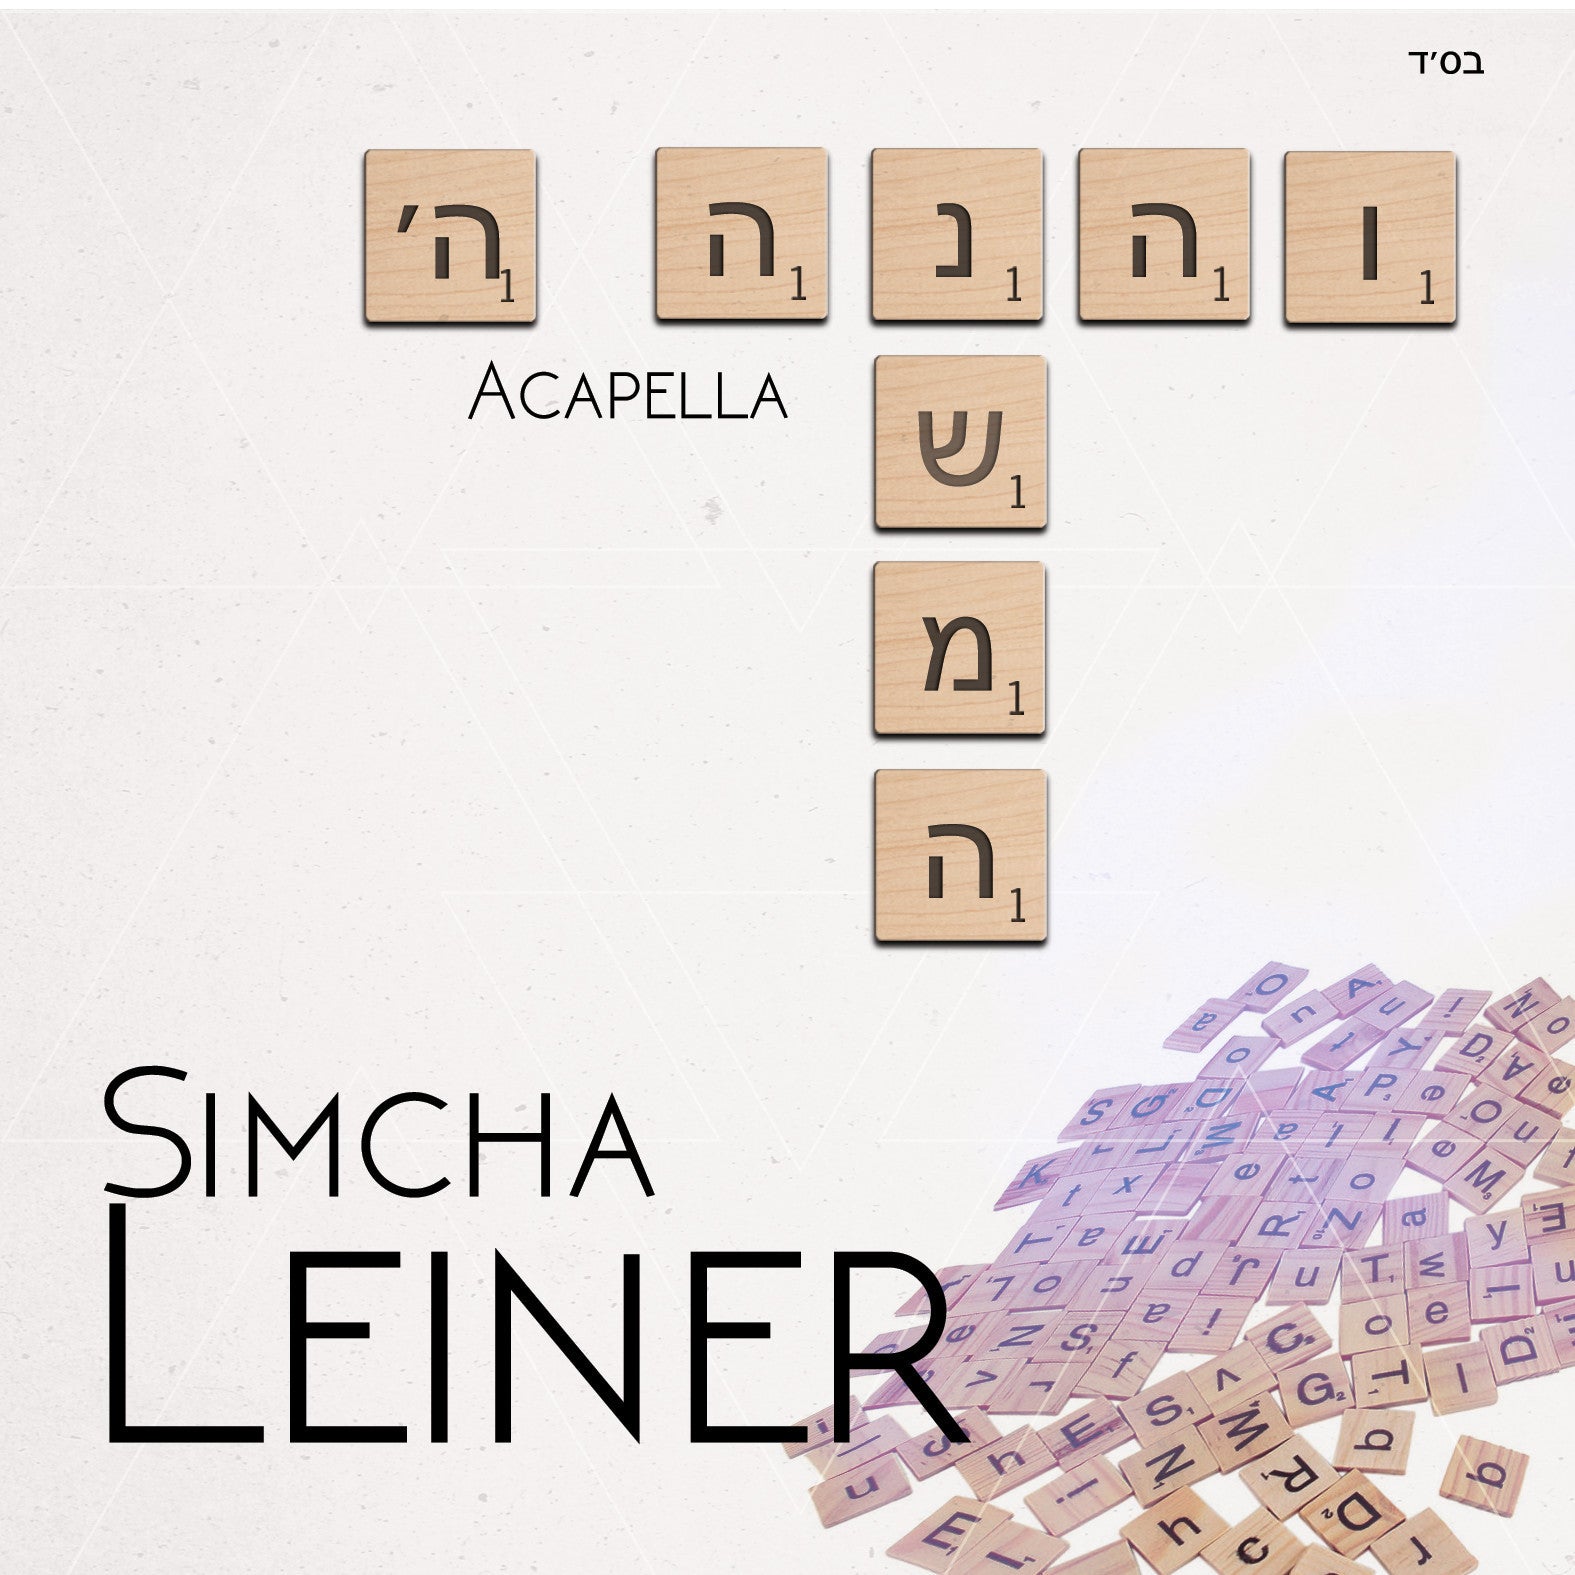 Simcha Leiner - V’hinei/Neshoma (Acapella)